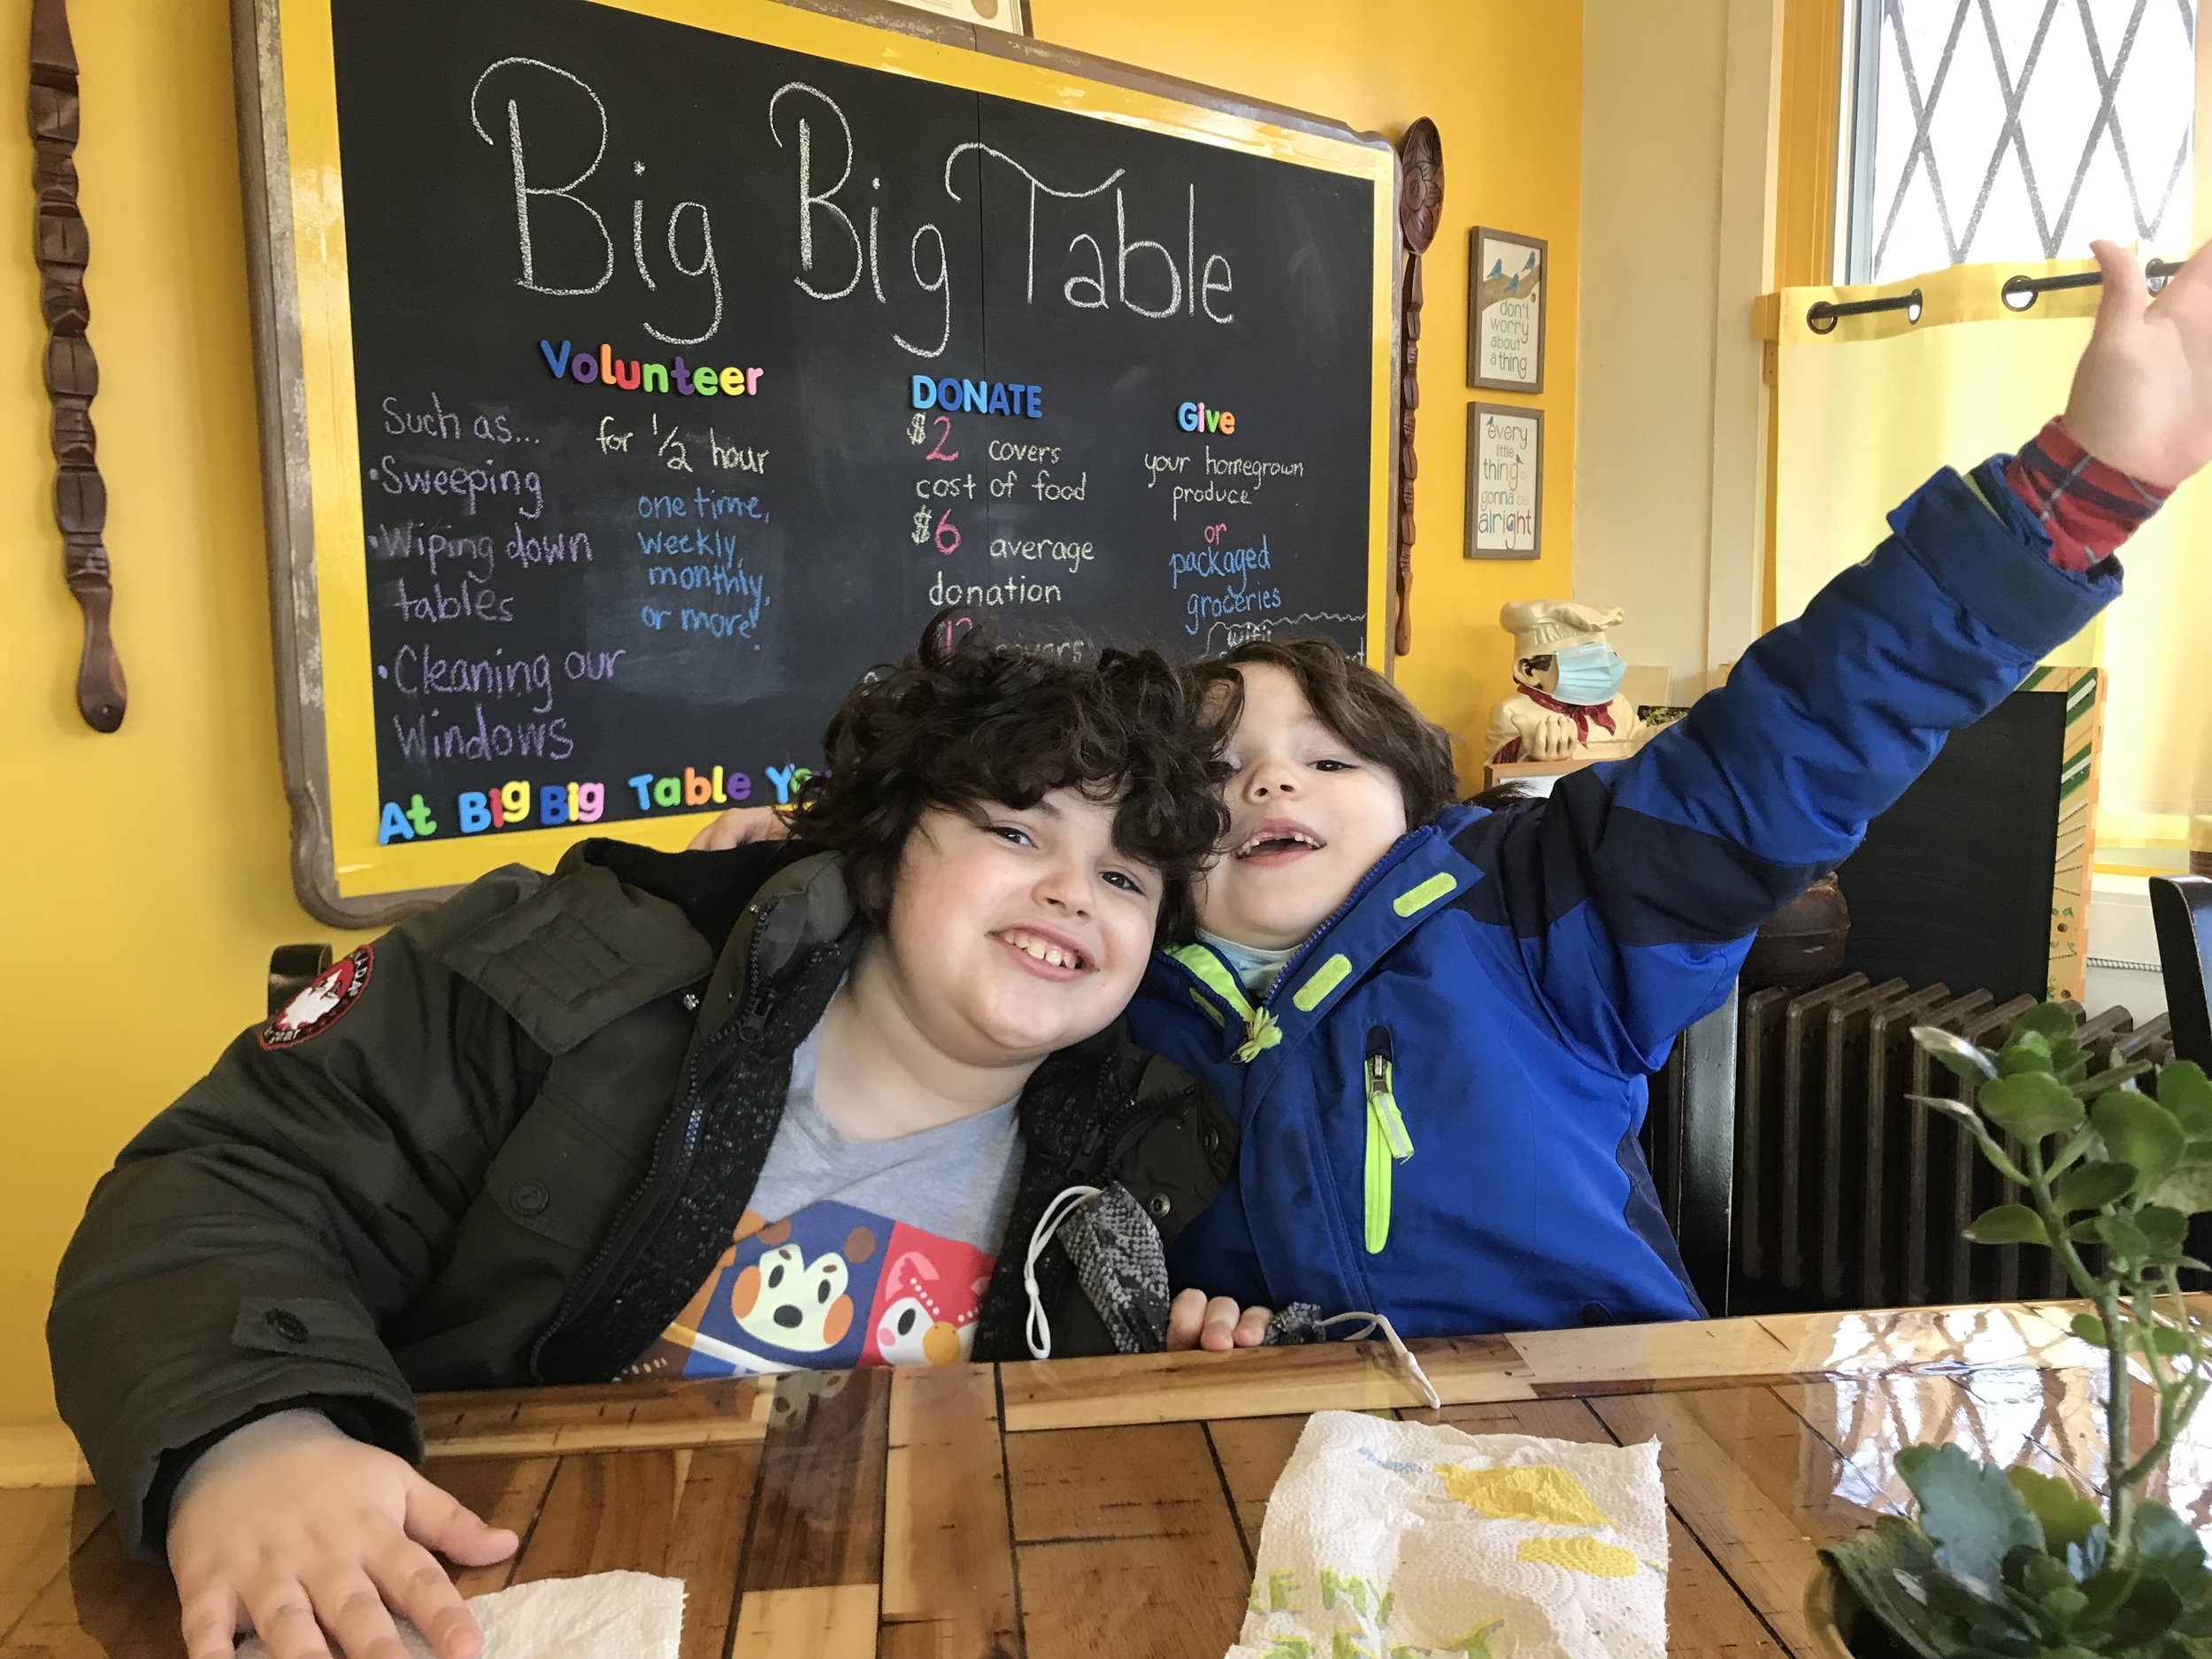 Big Big Table Community Café 